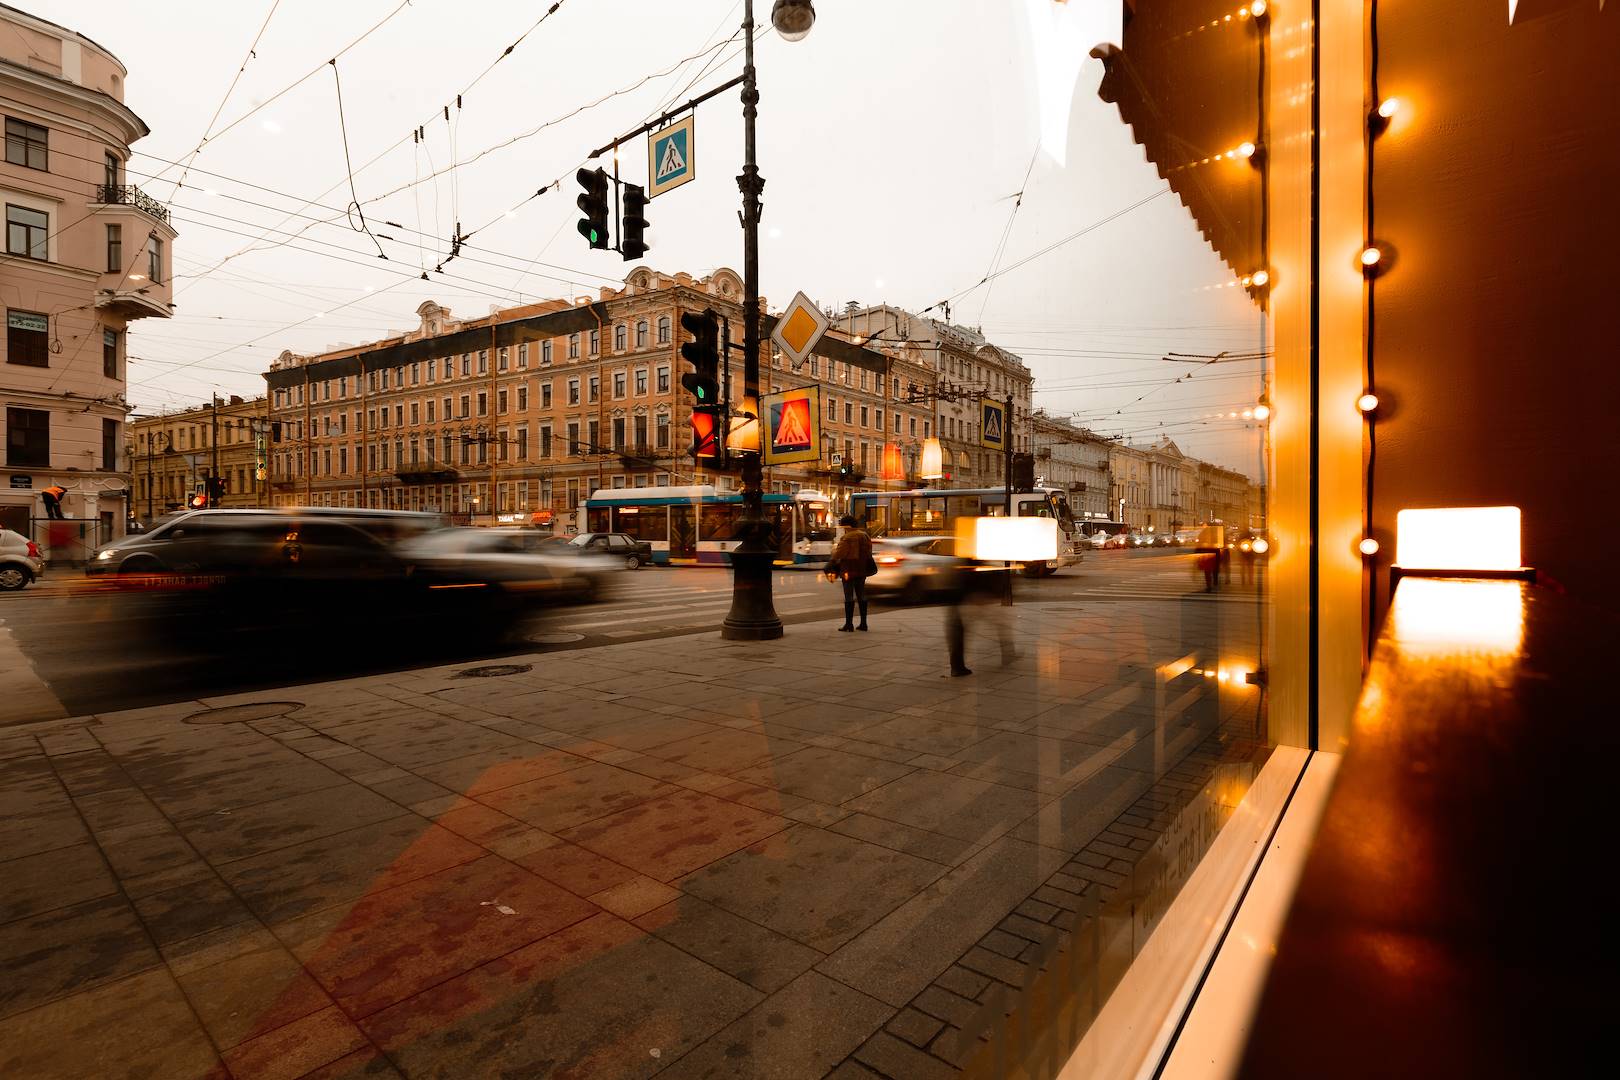 Saint-Pétersbourg depuis la fenêtre d'un café - Russie